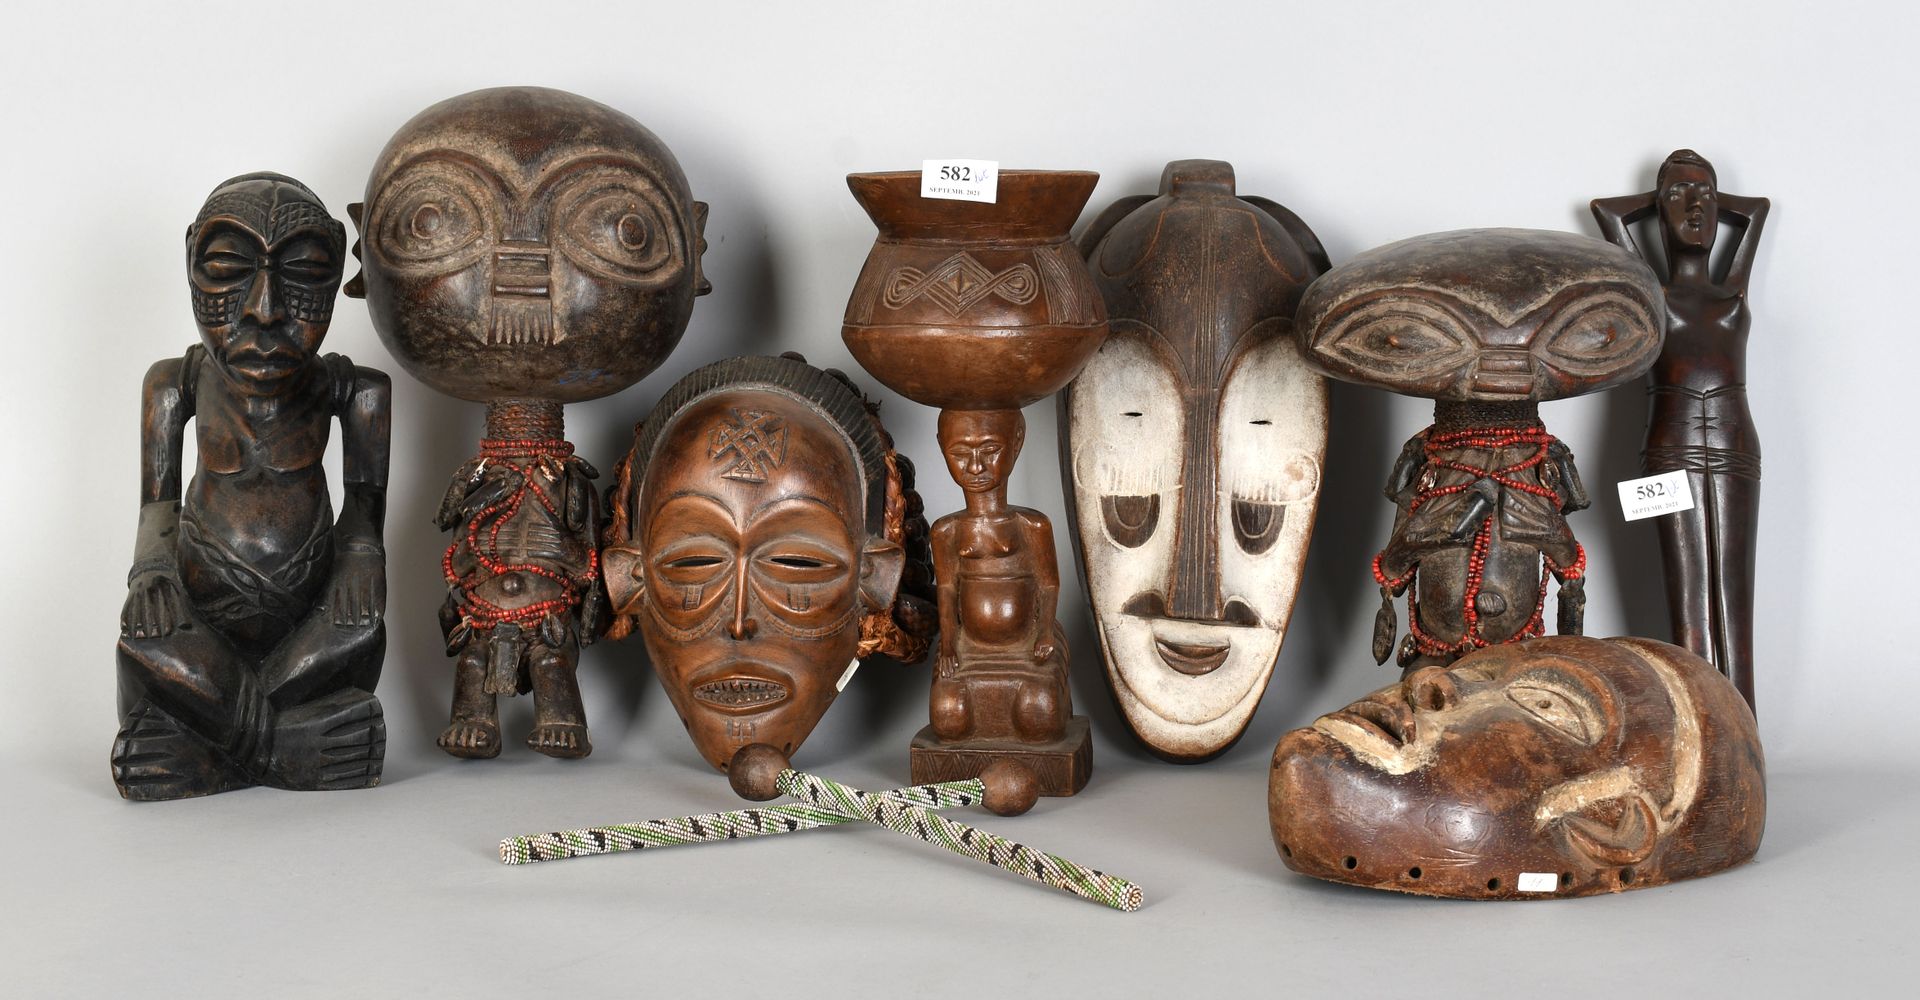 Null Africana

Viele Statuen, Masken und Fetische